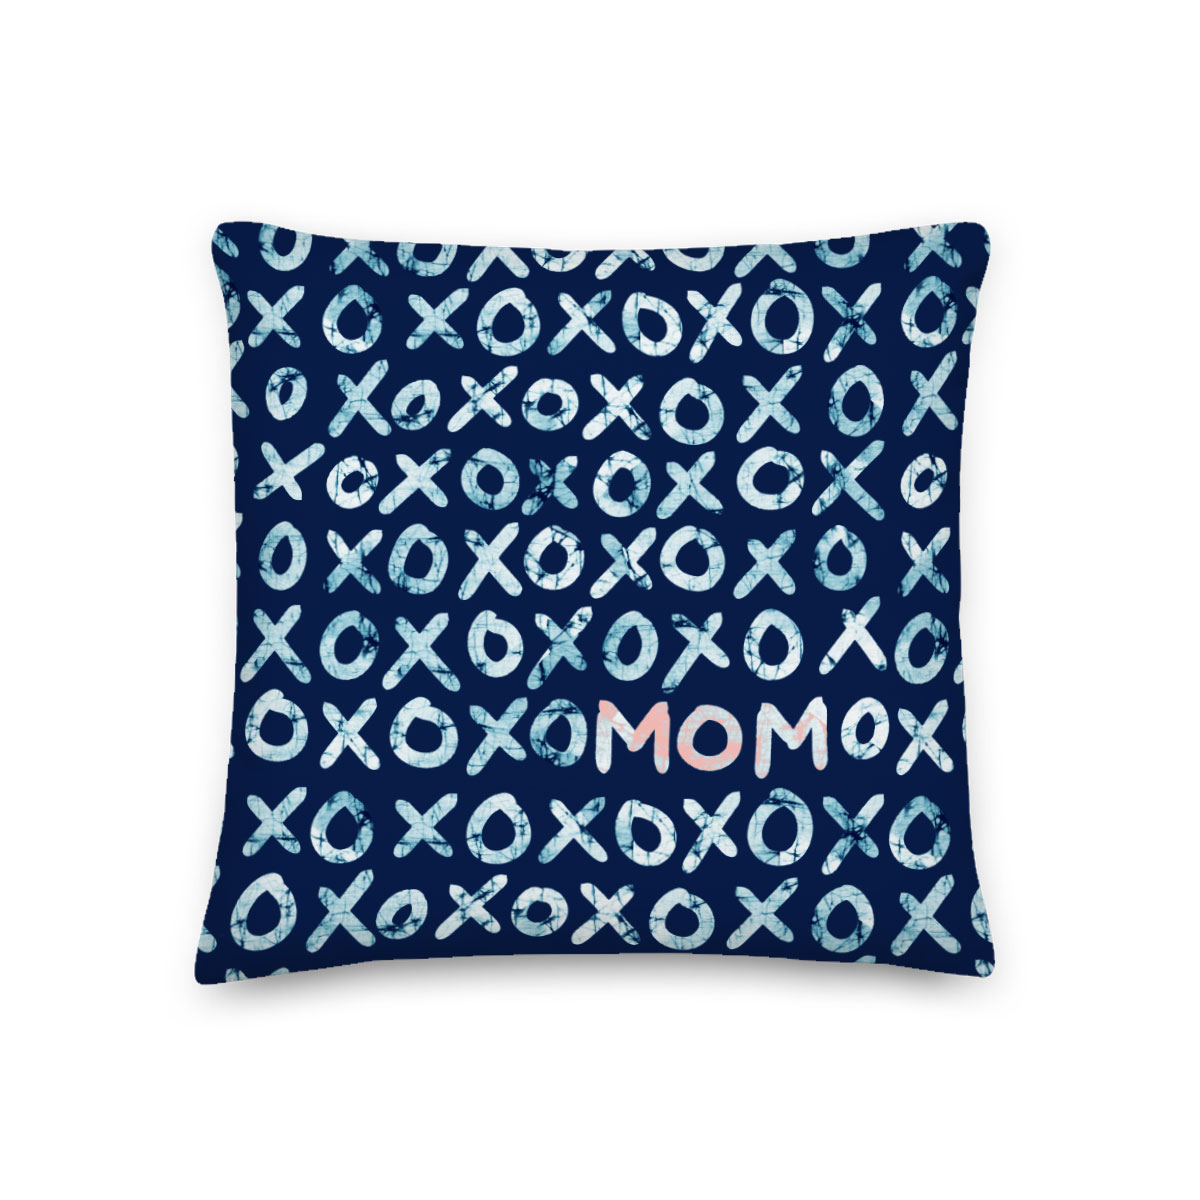 XOXO Mom – Batik-style Throw Pillow